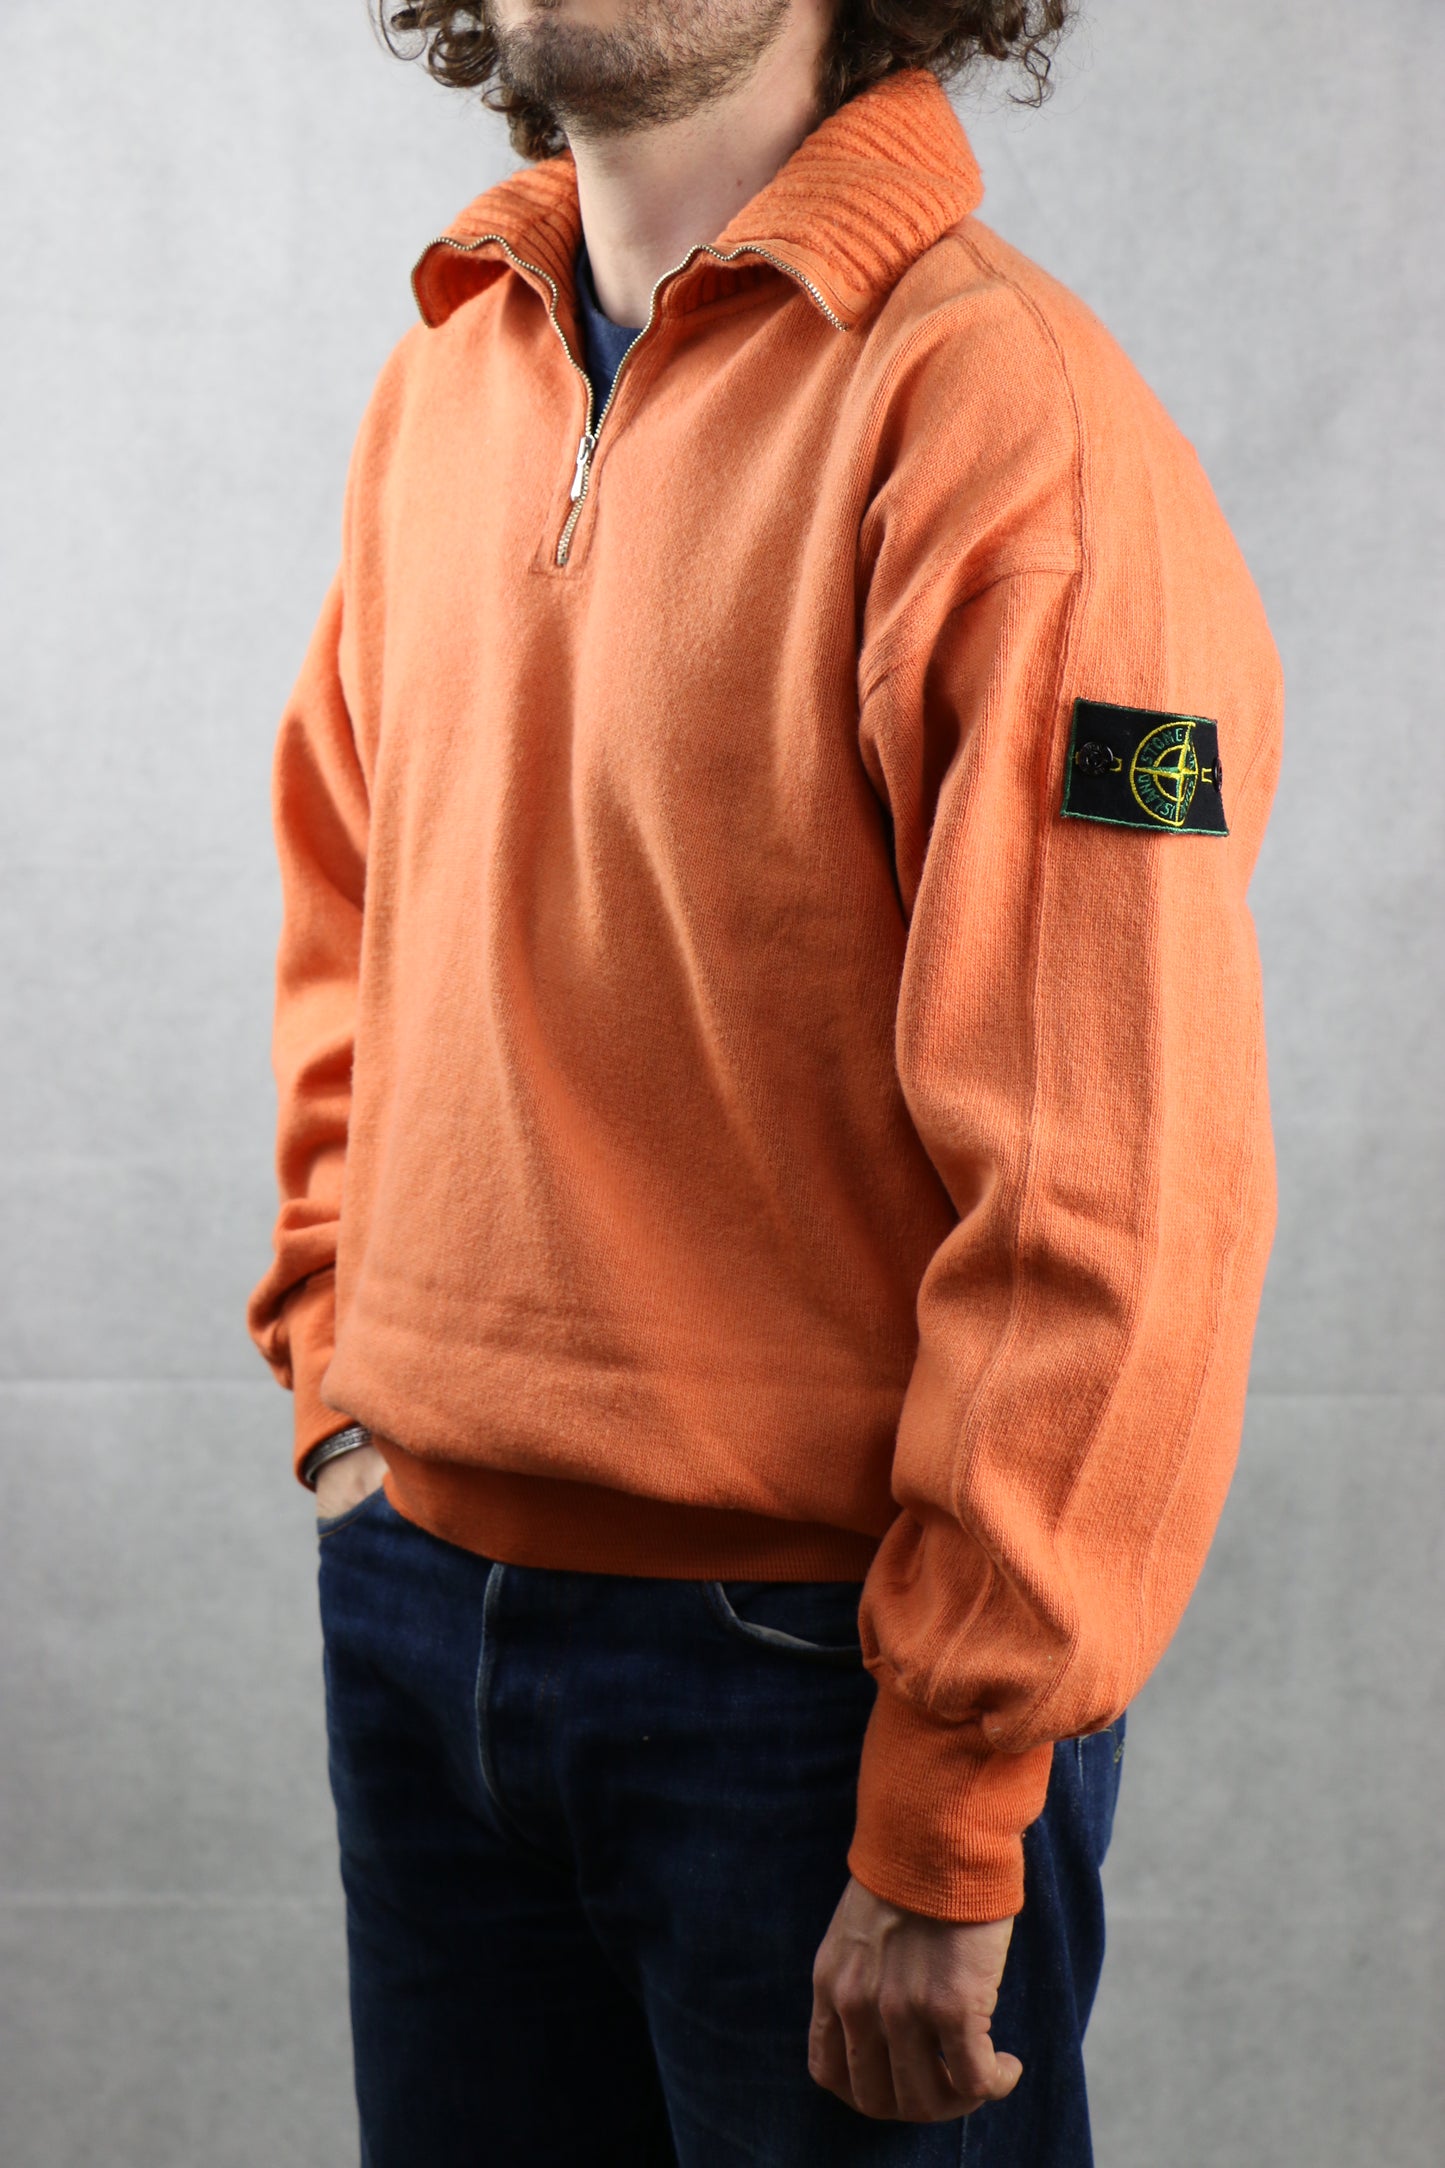 Stone Island Orange Sweater - vintage clothing clochard92.com